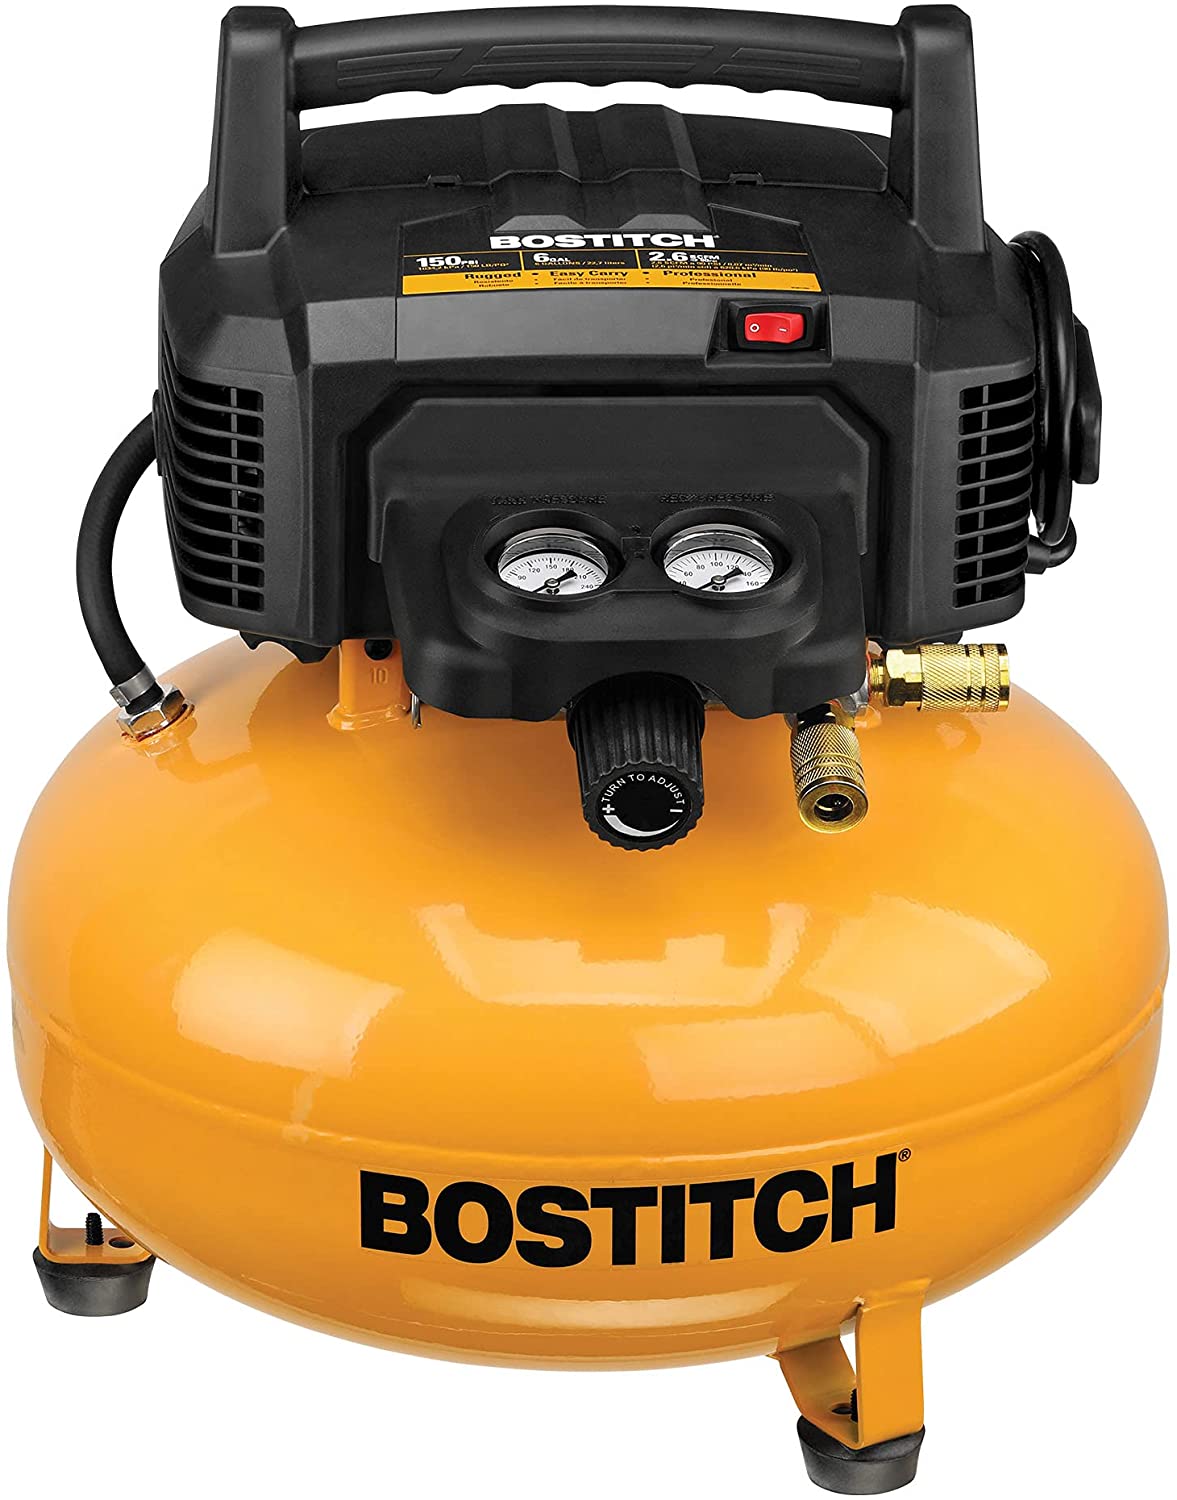 BOSTITCH BTFP02012 Pancake Air Compressor, Oil-Free